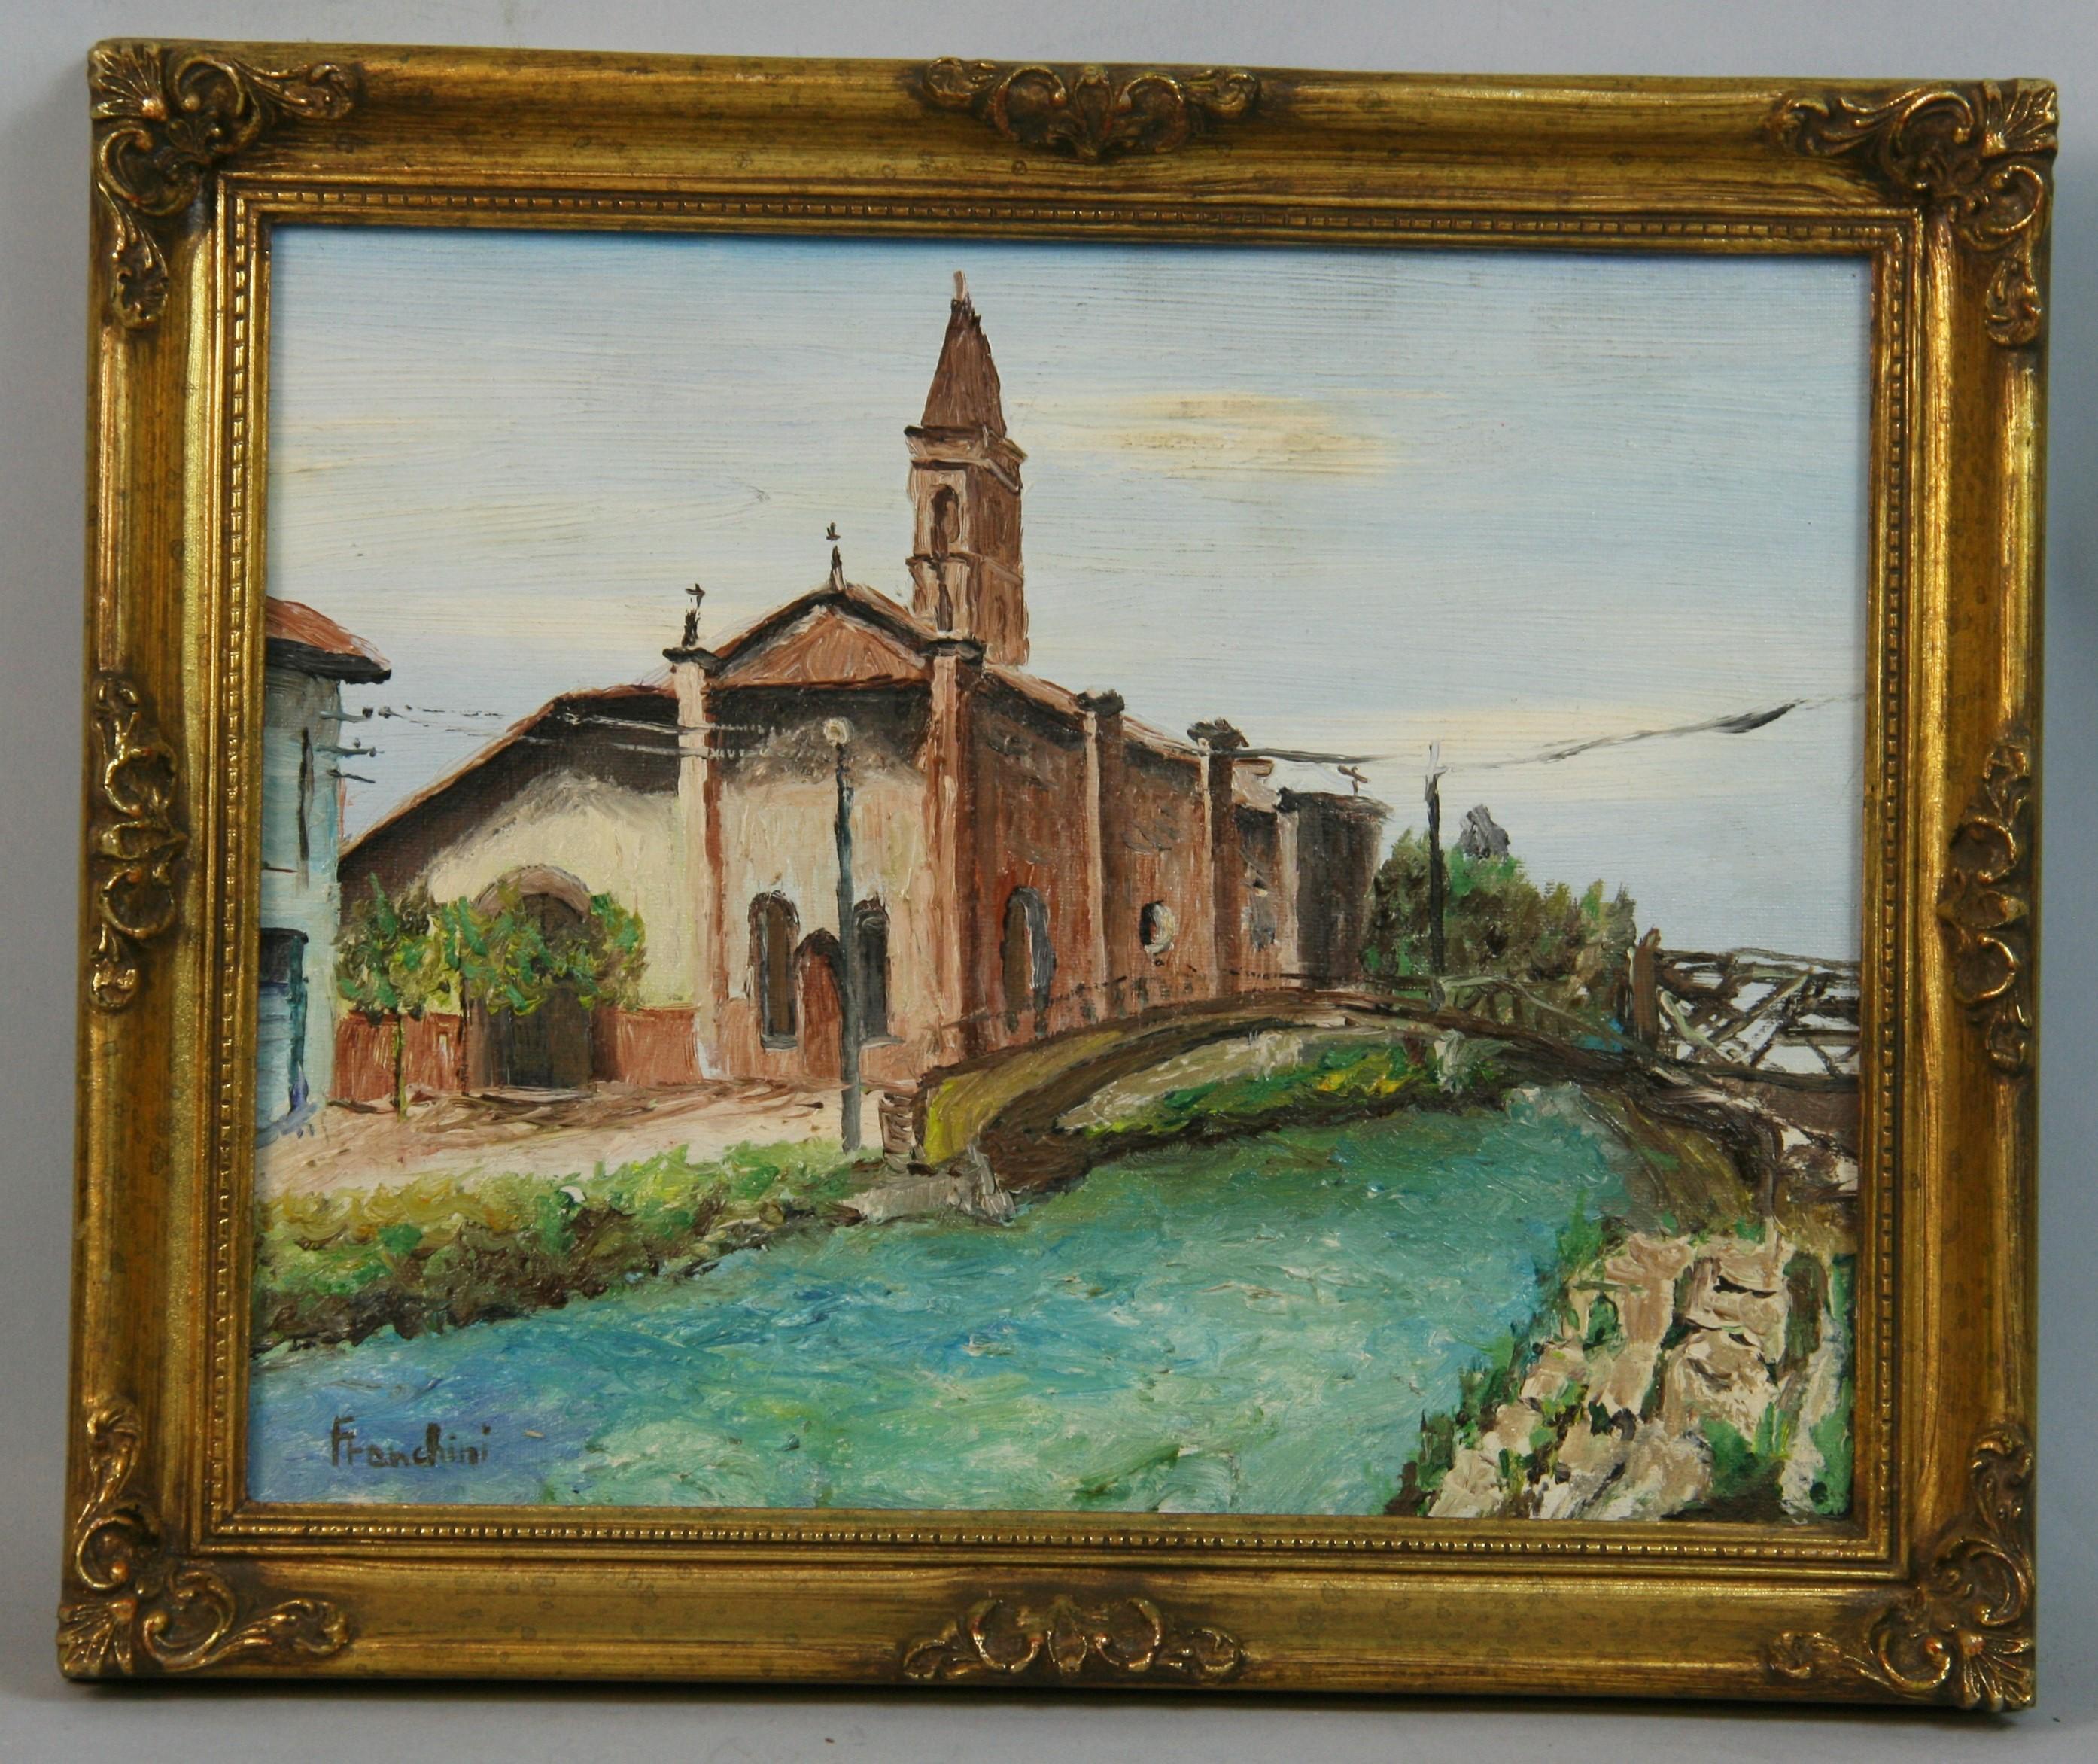 Vintage Italian Bridge Cross to a Village Church par Franchini 1980 - Painting de Unknown